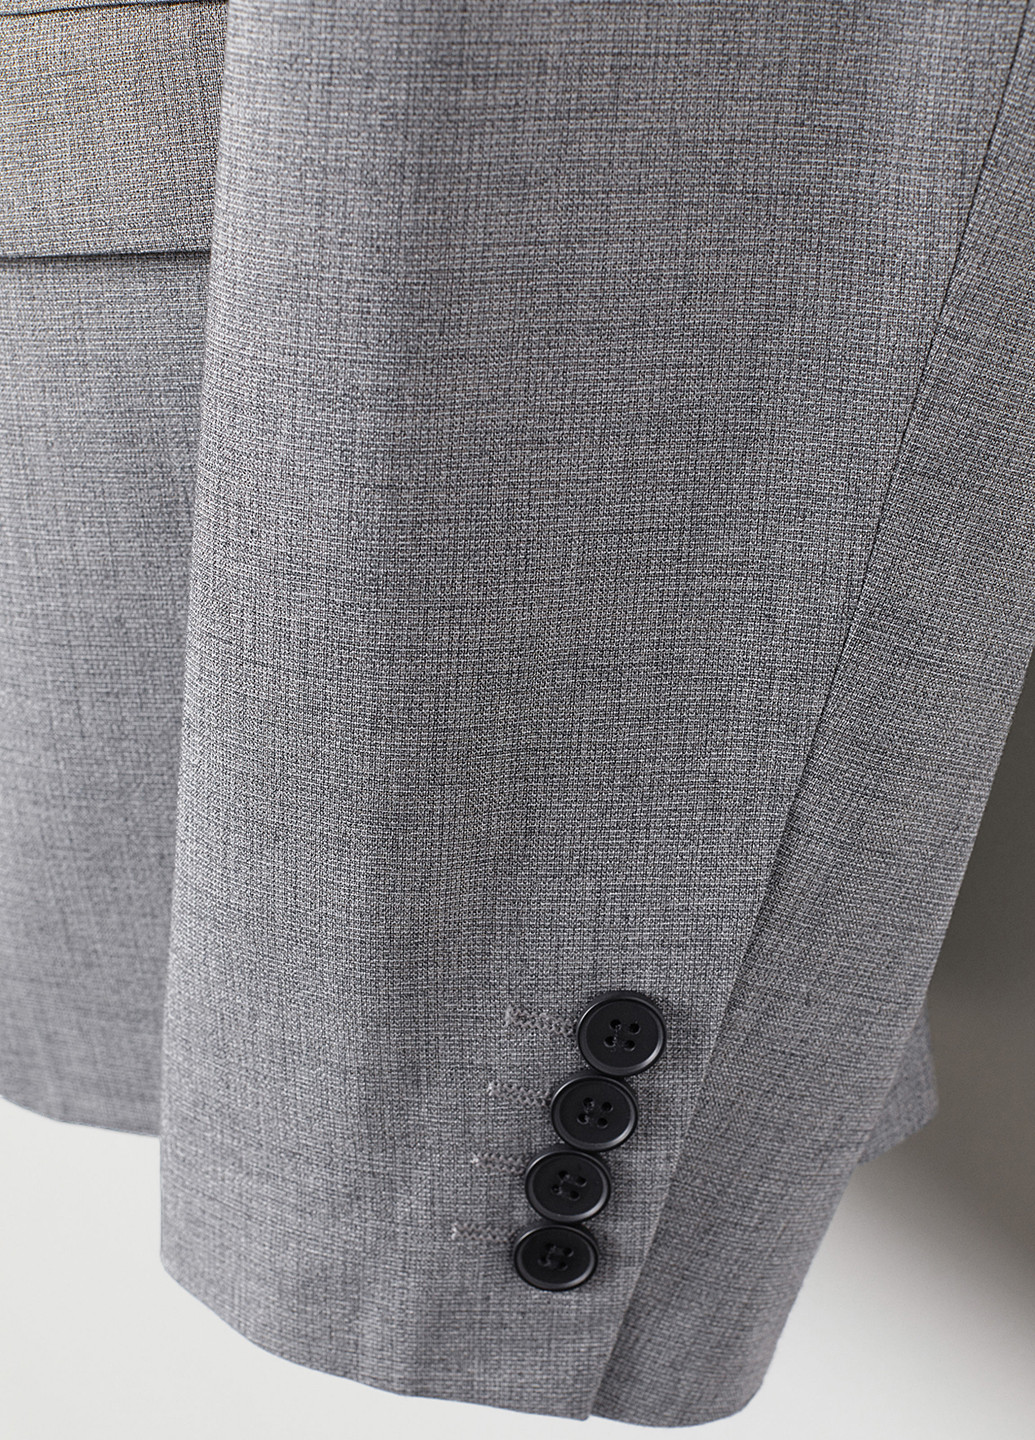 Піджак H&M з довгим рукавом меланж сірий діловий